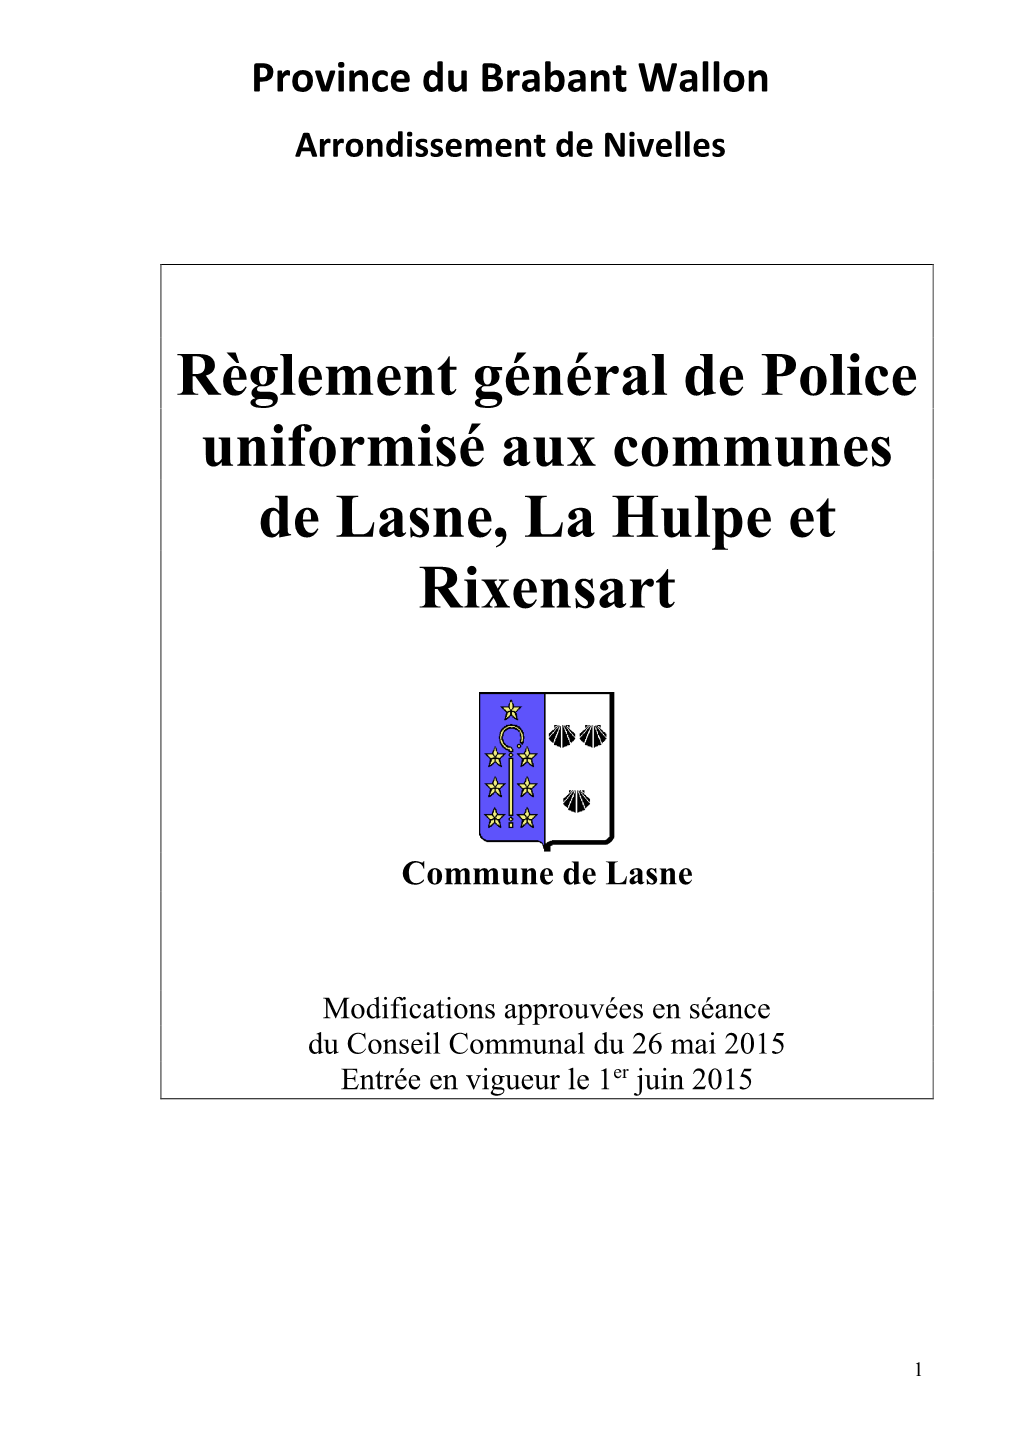 Règlement Général De Police Uniformisé Aux Communes De Lasne, La Hulpe Et Rixensart